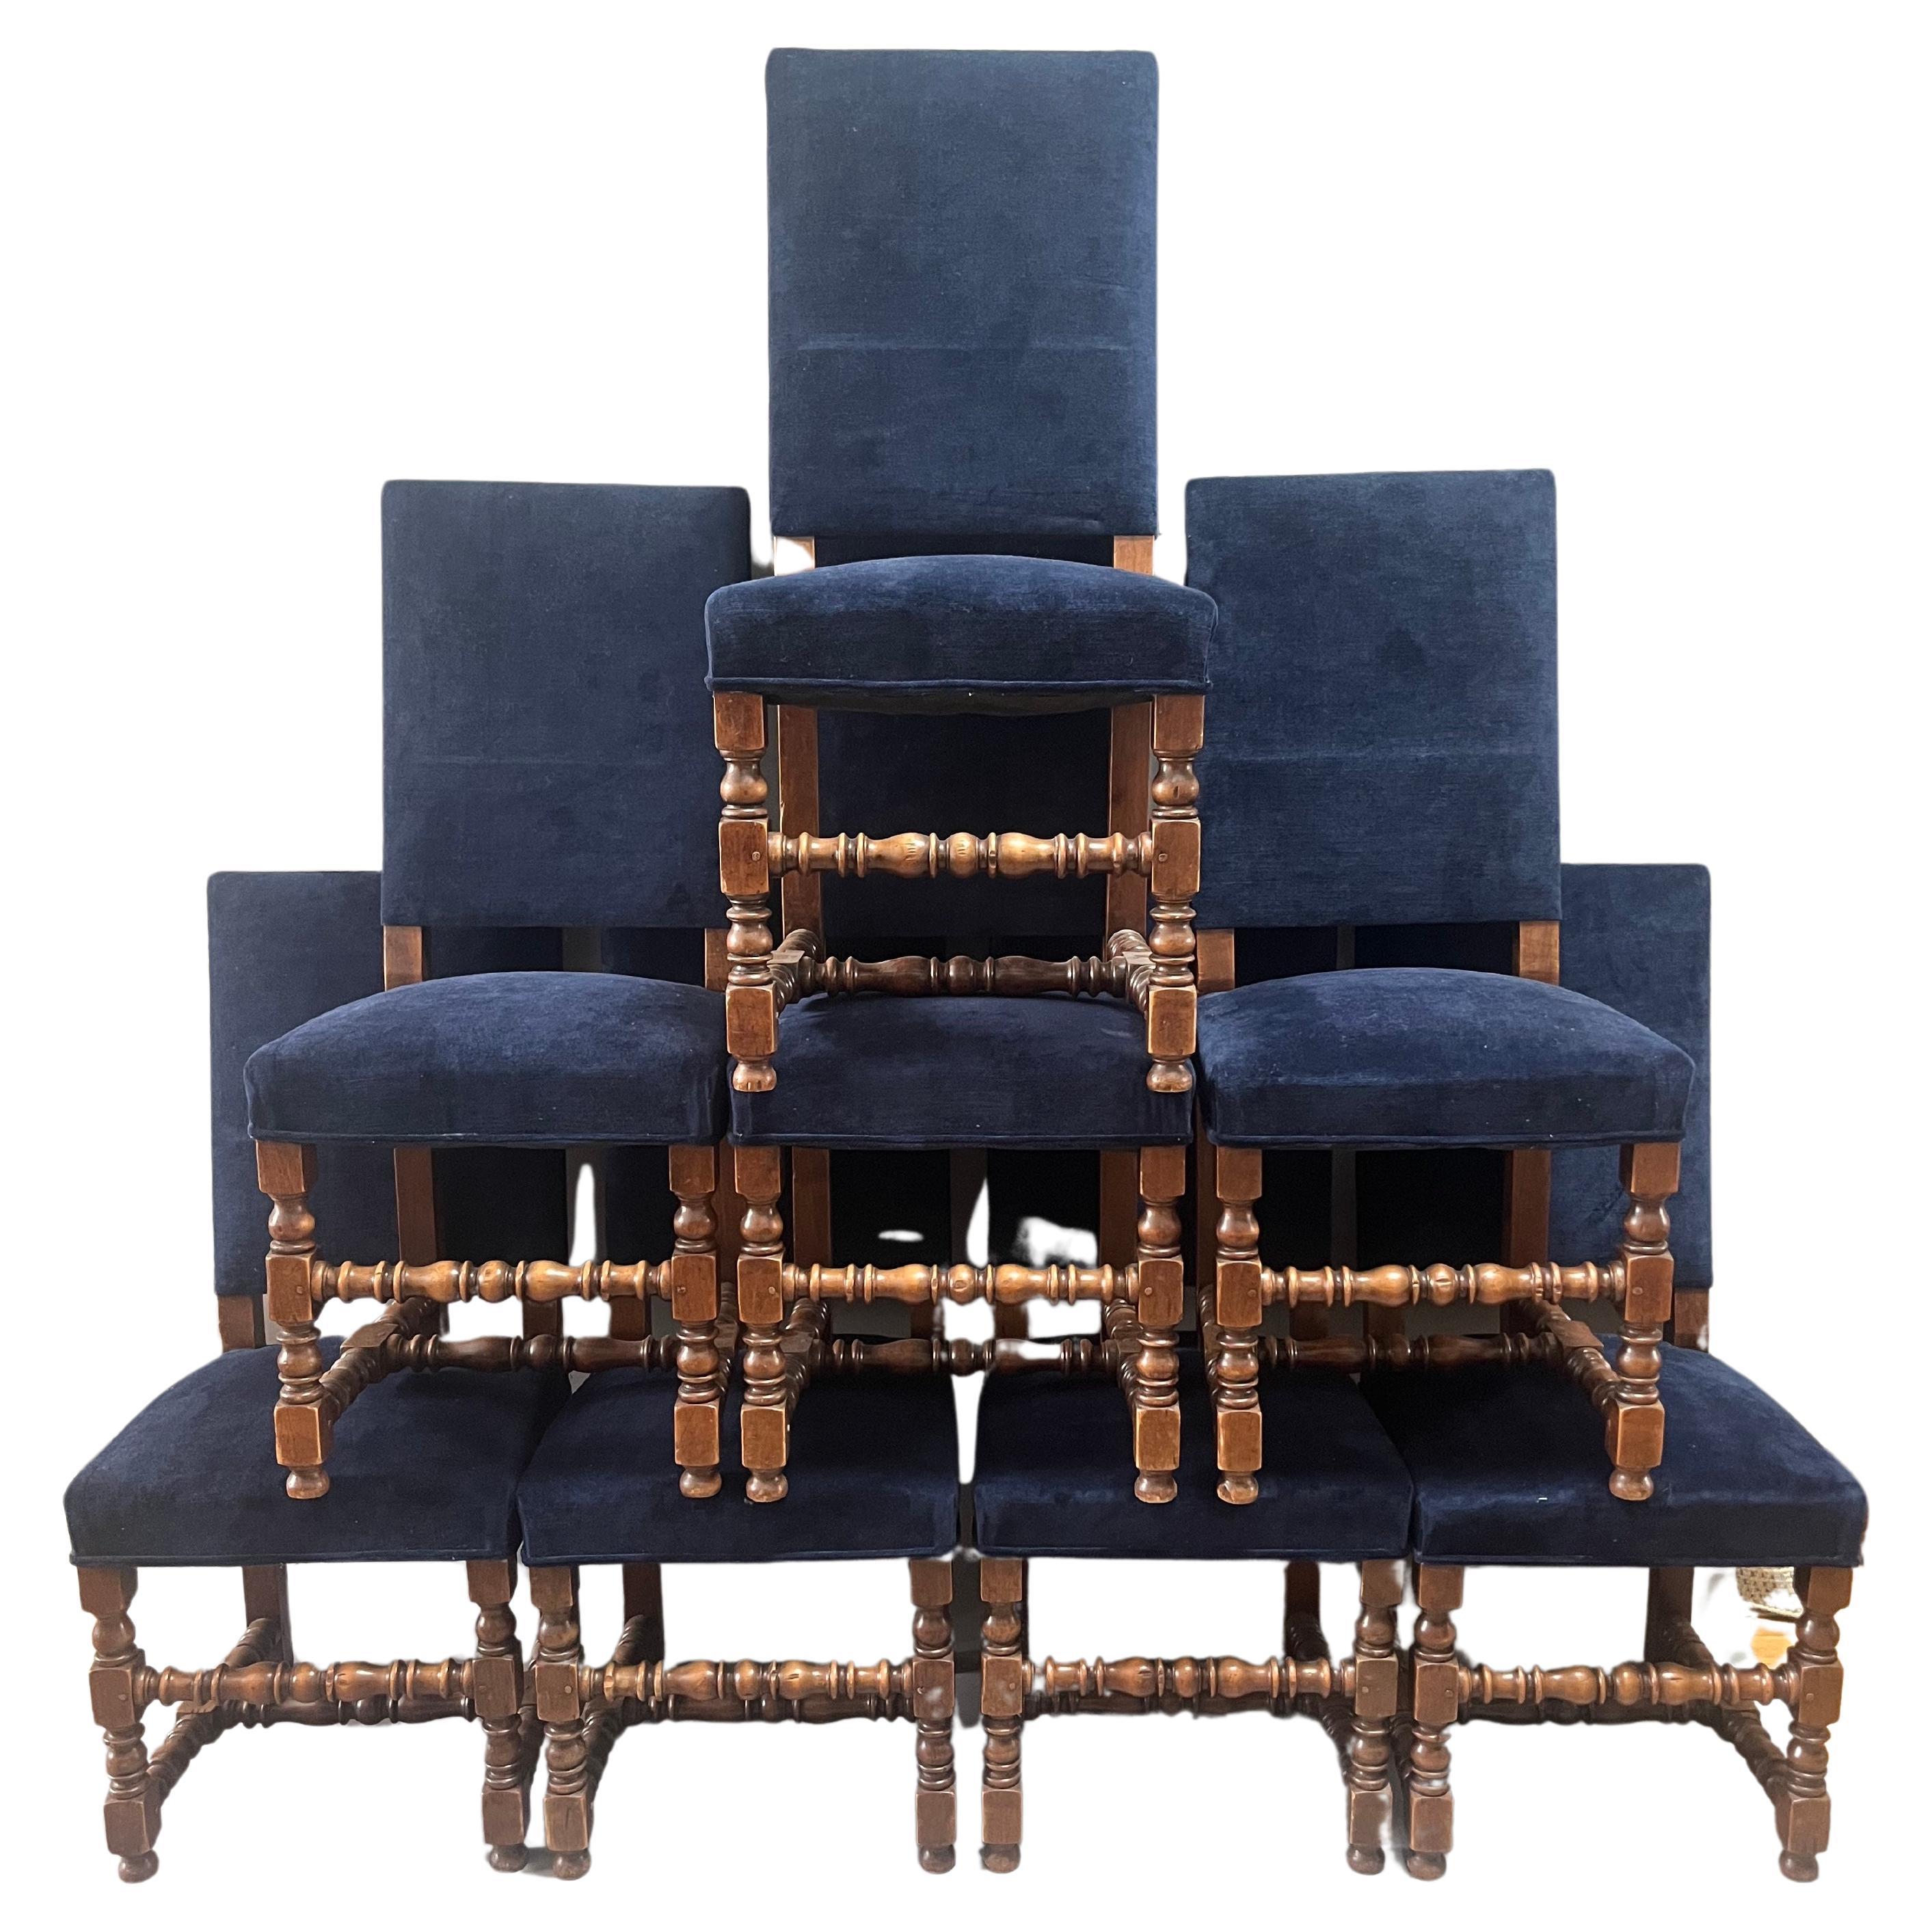  Ensemble de huit chaises de salle à manger provinciales françaises de style Louis XIII